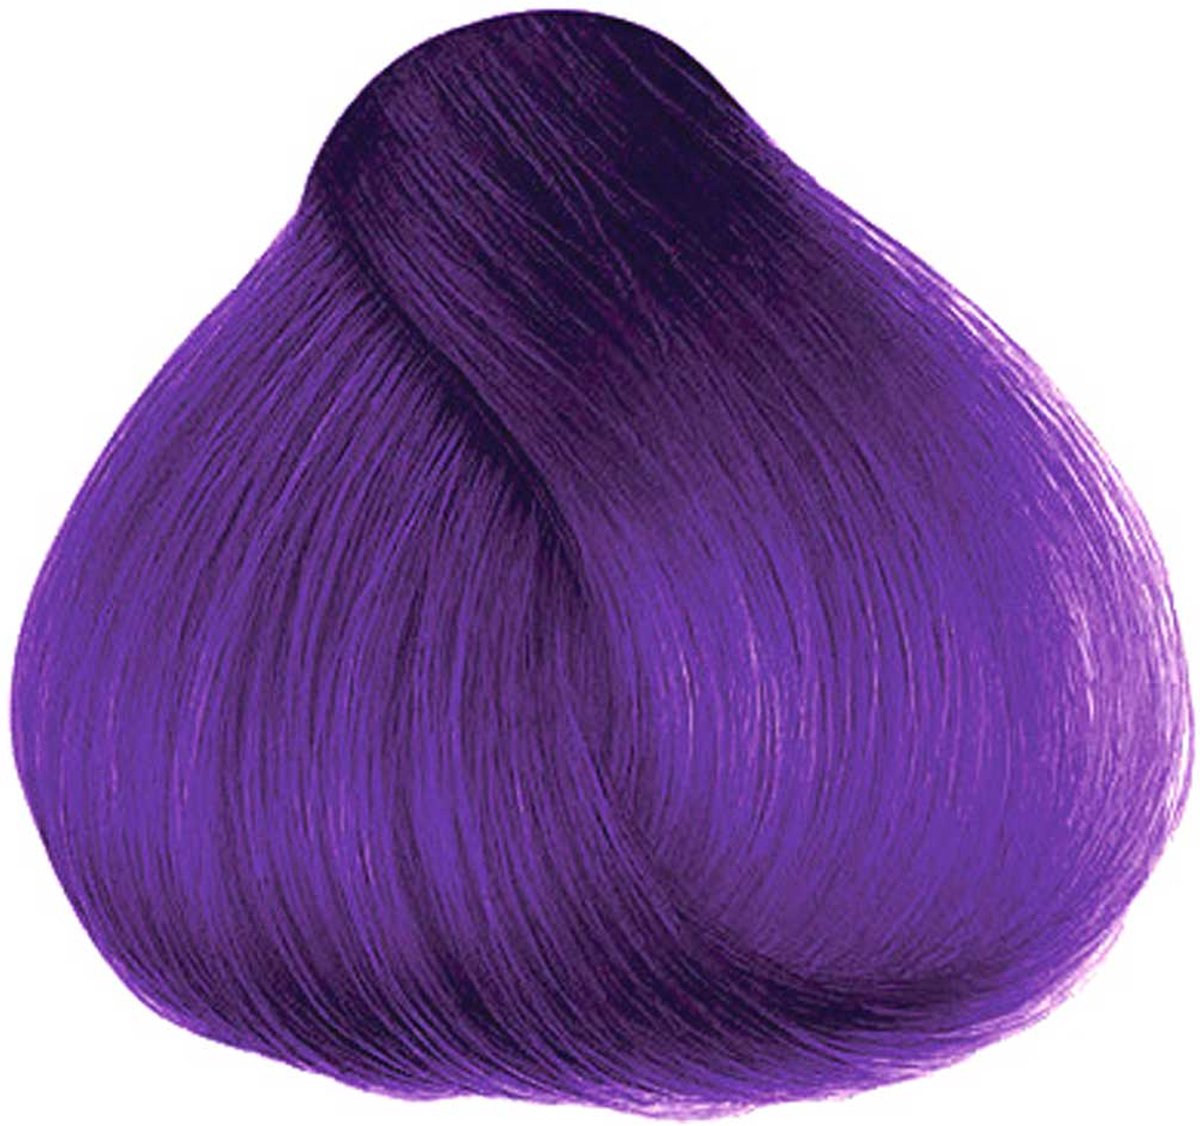 Hermans Amazing Haircolor - Electra Violet Semi permanente haarverf - Paars